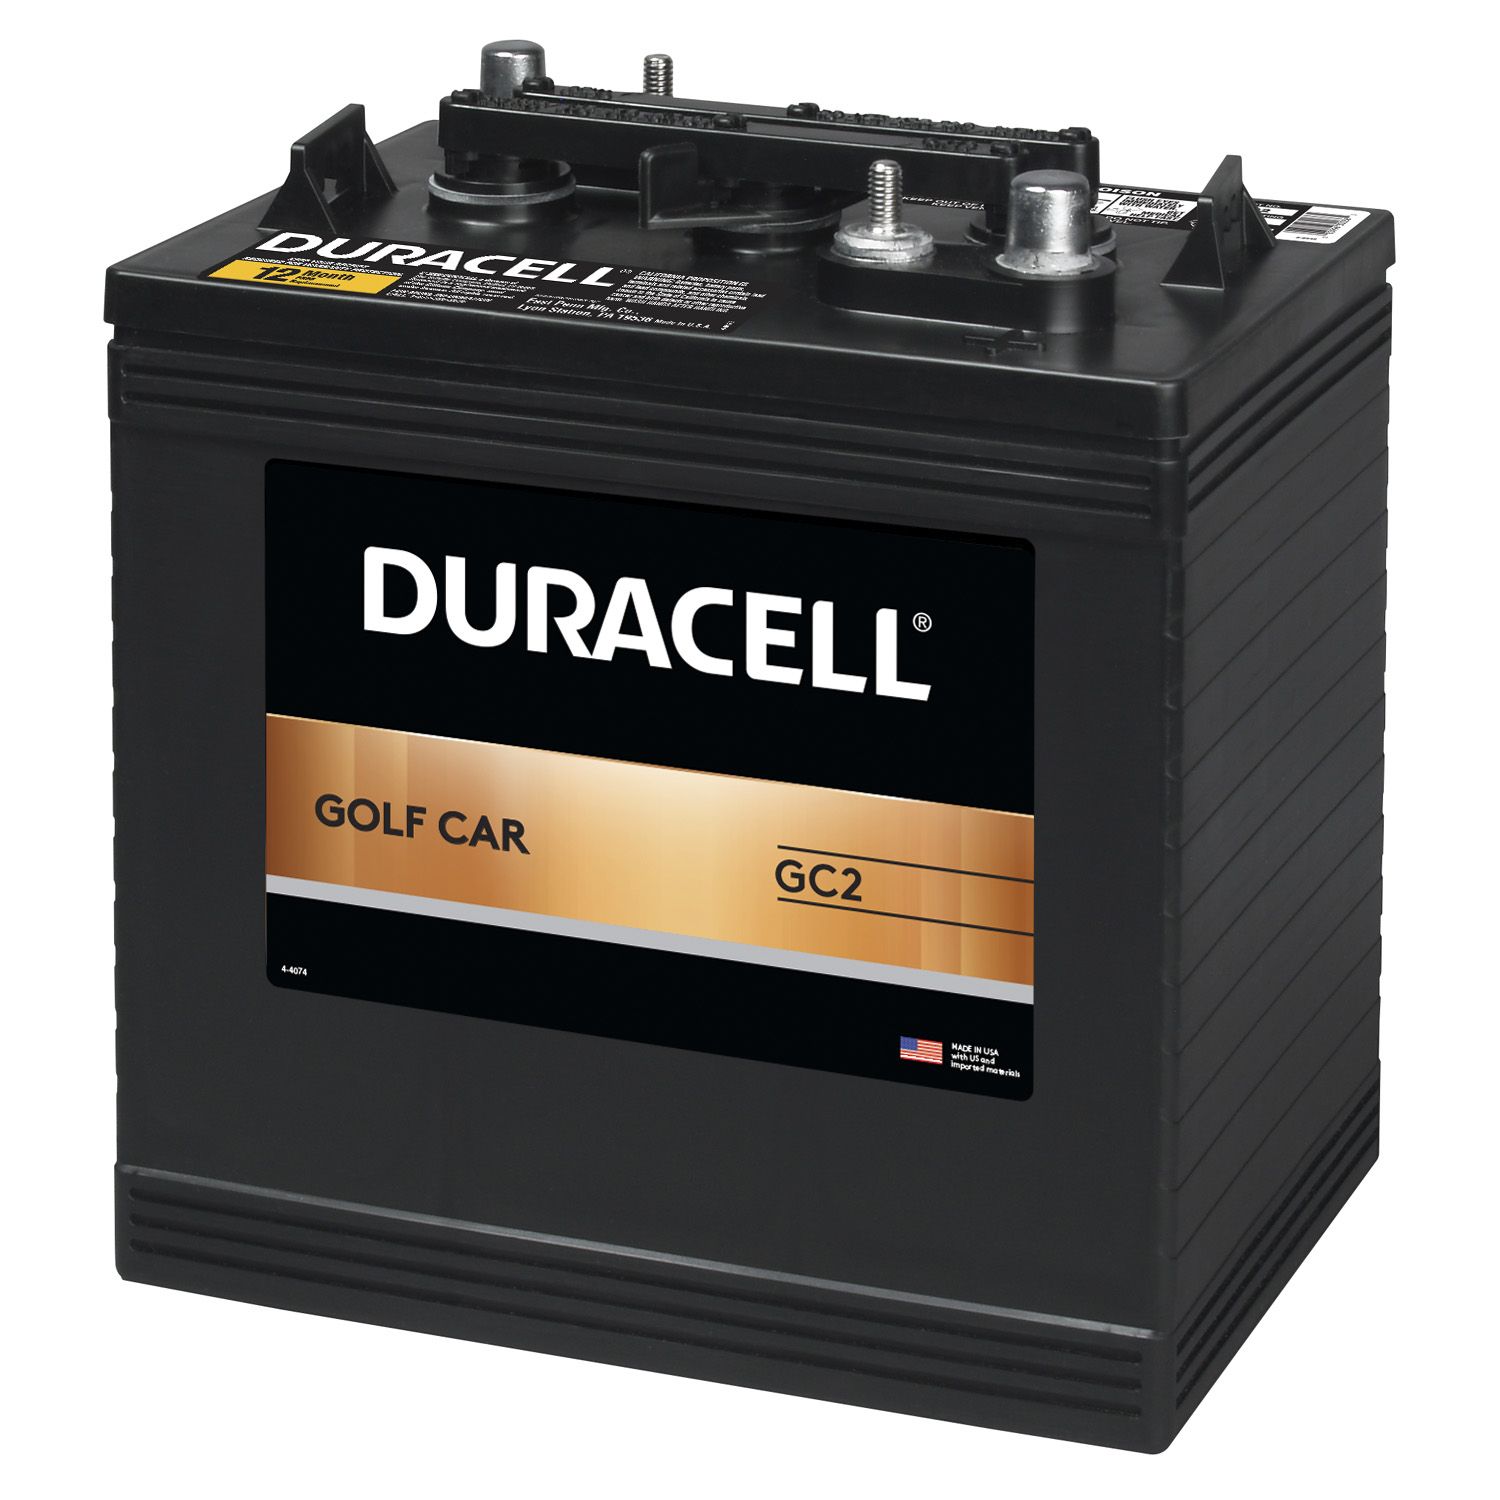 deals on *new* batteries... http://www.samsclub.com/sams/duracell-golf-car-...